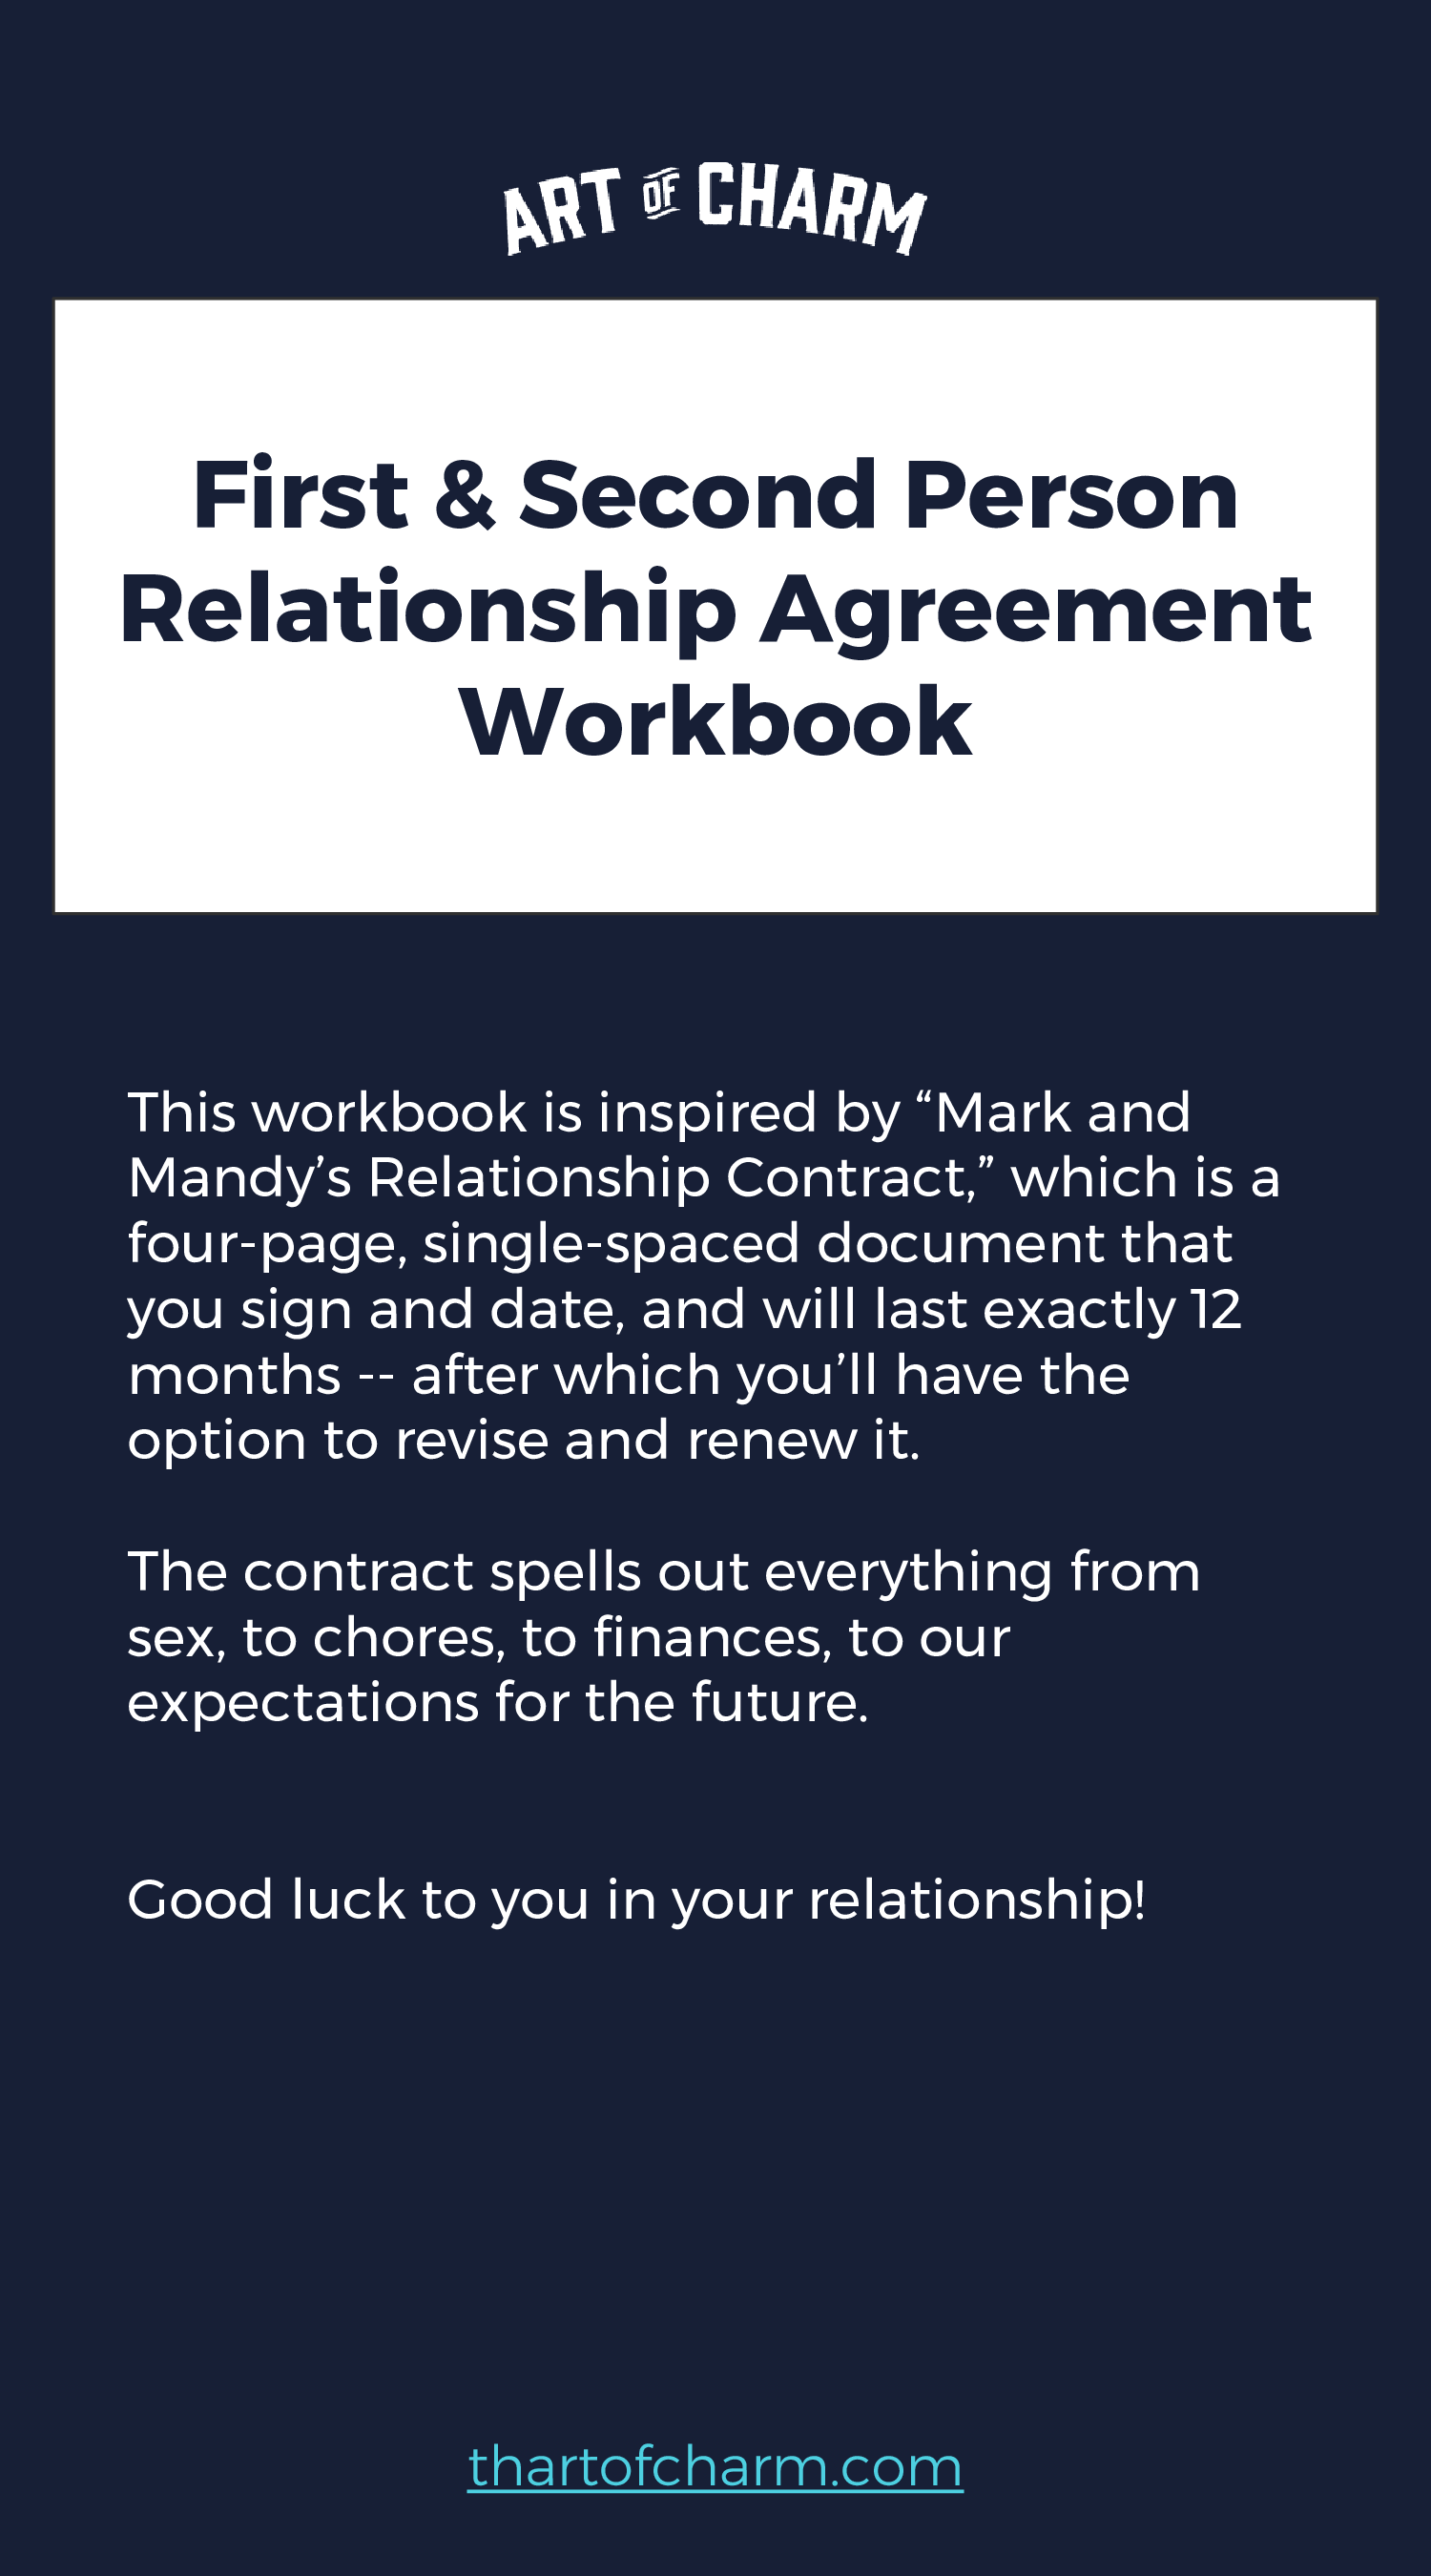 Relationship contract the Relationship Contract